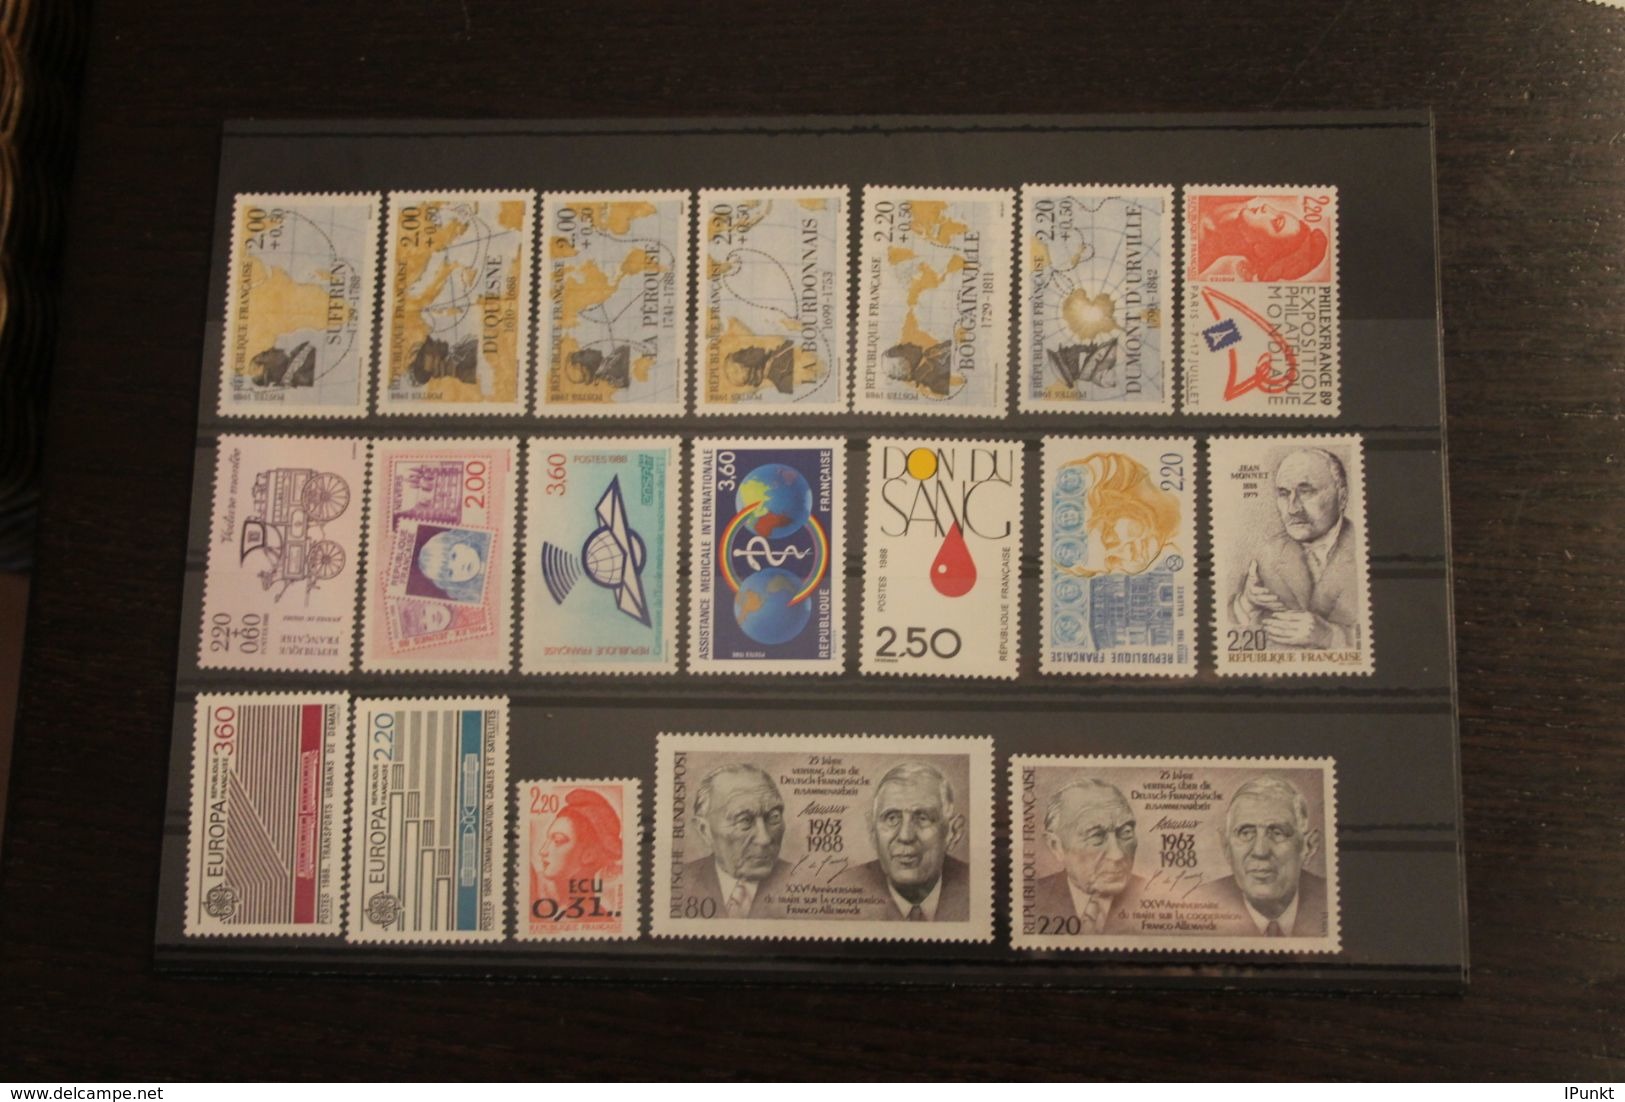 France 1988, 2636-2695; Postfrisch, Frankreich Jahrgang 1988, 51 Werte, 4 MH, überkomplett, 4 Steckkarten - 1980-1989